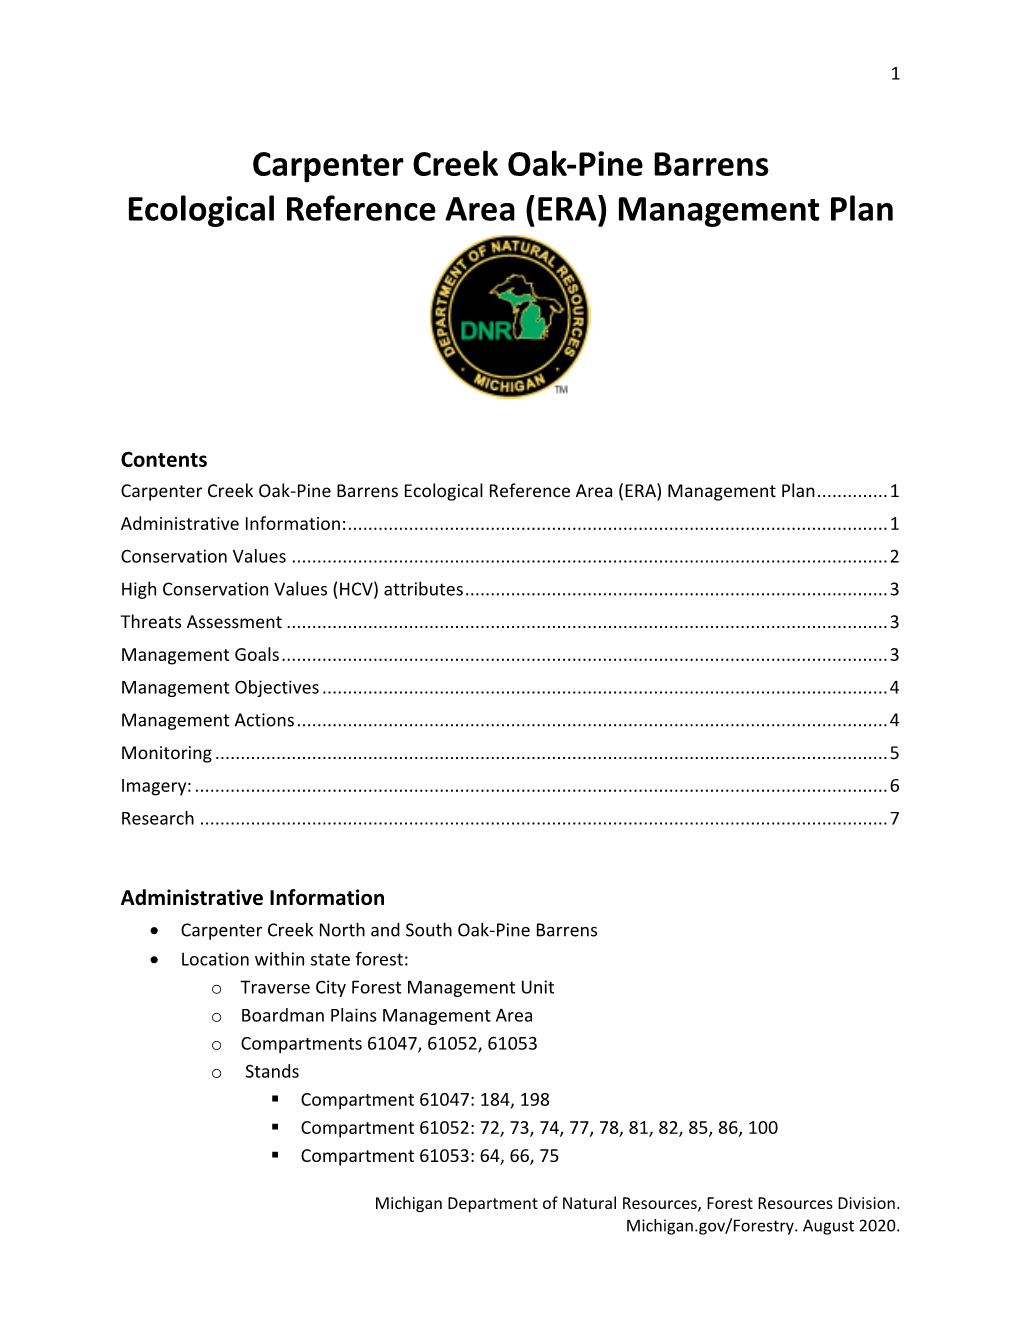 Carpenter Creek Oak-Pine Barrens Ecological Reference Area (ERA) Management Plan